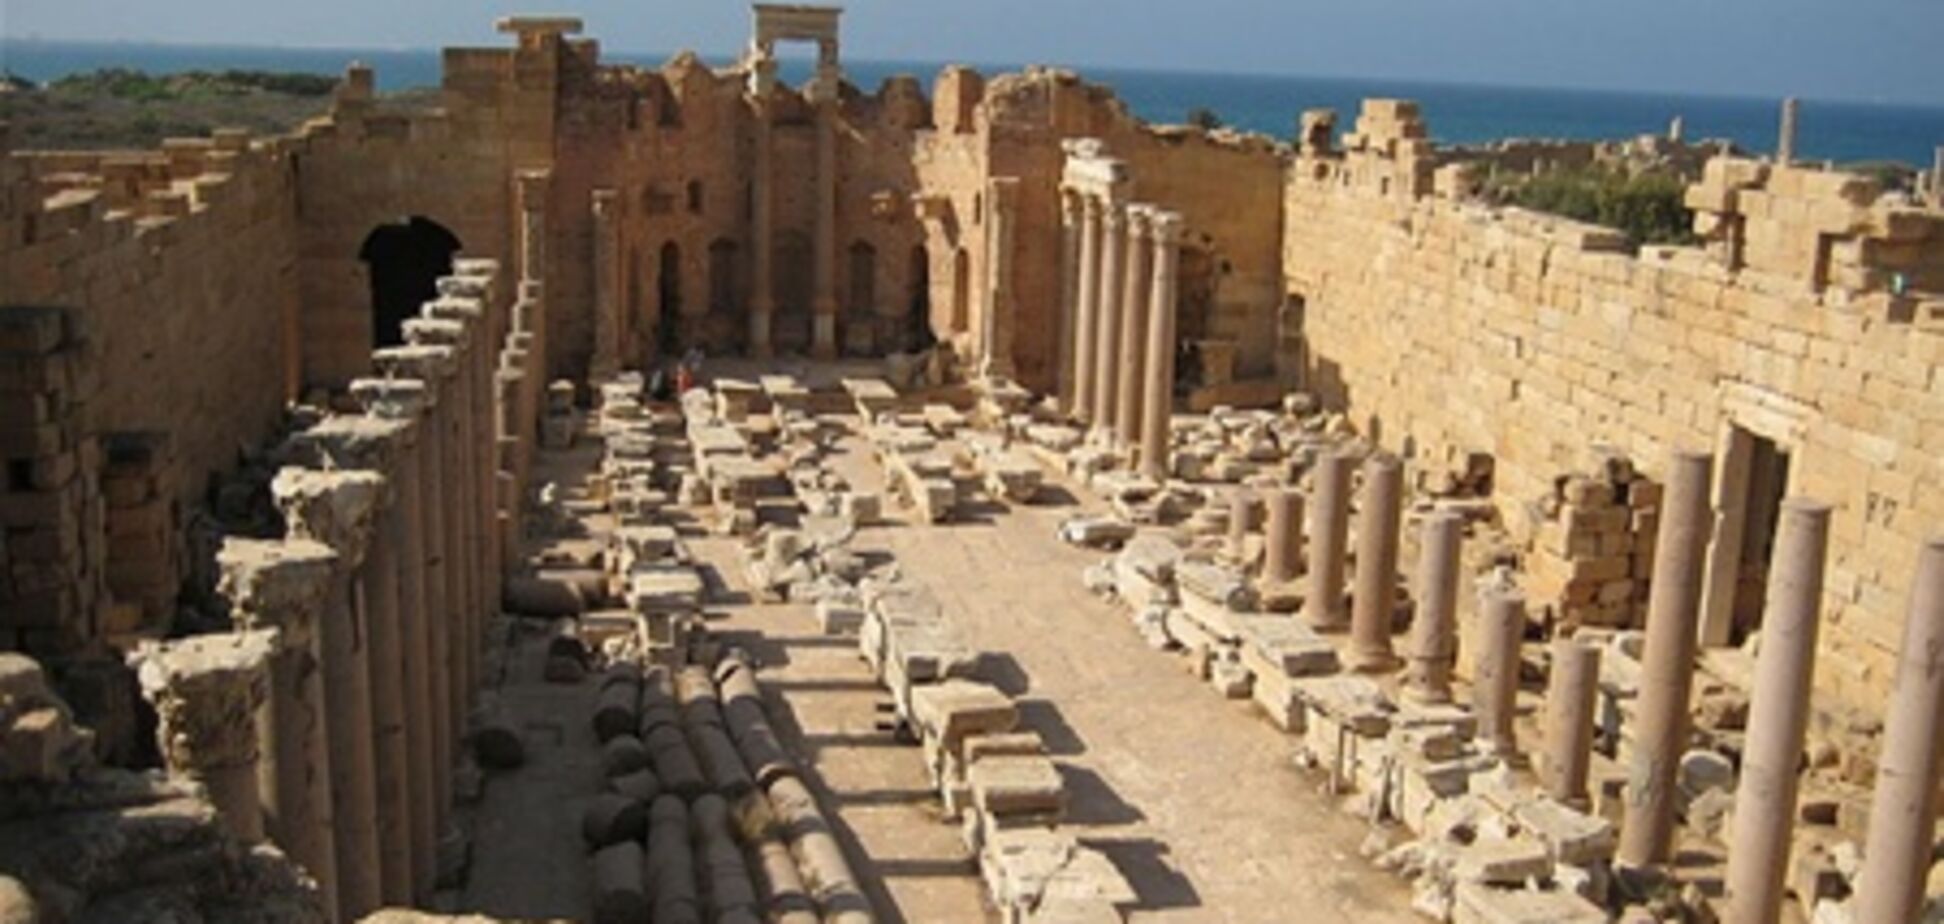 ЮНЕСКО предупреждает об опасности разграбления памятников Ливии